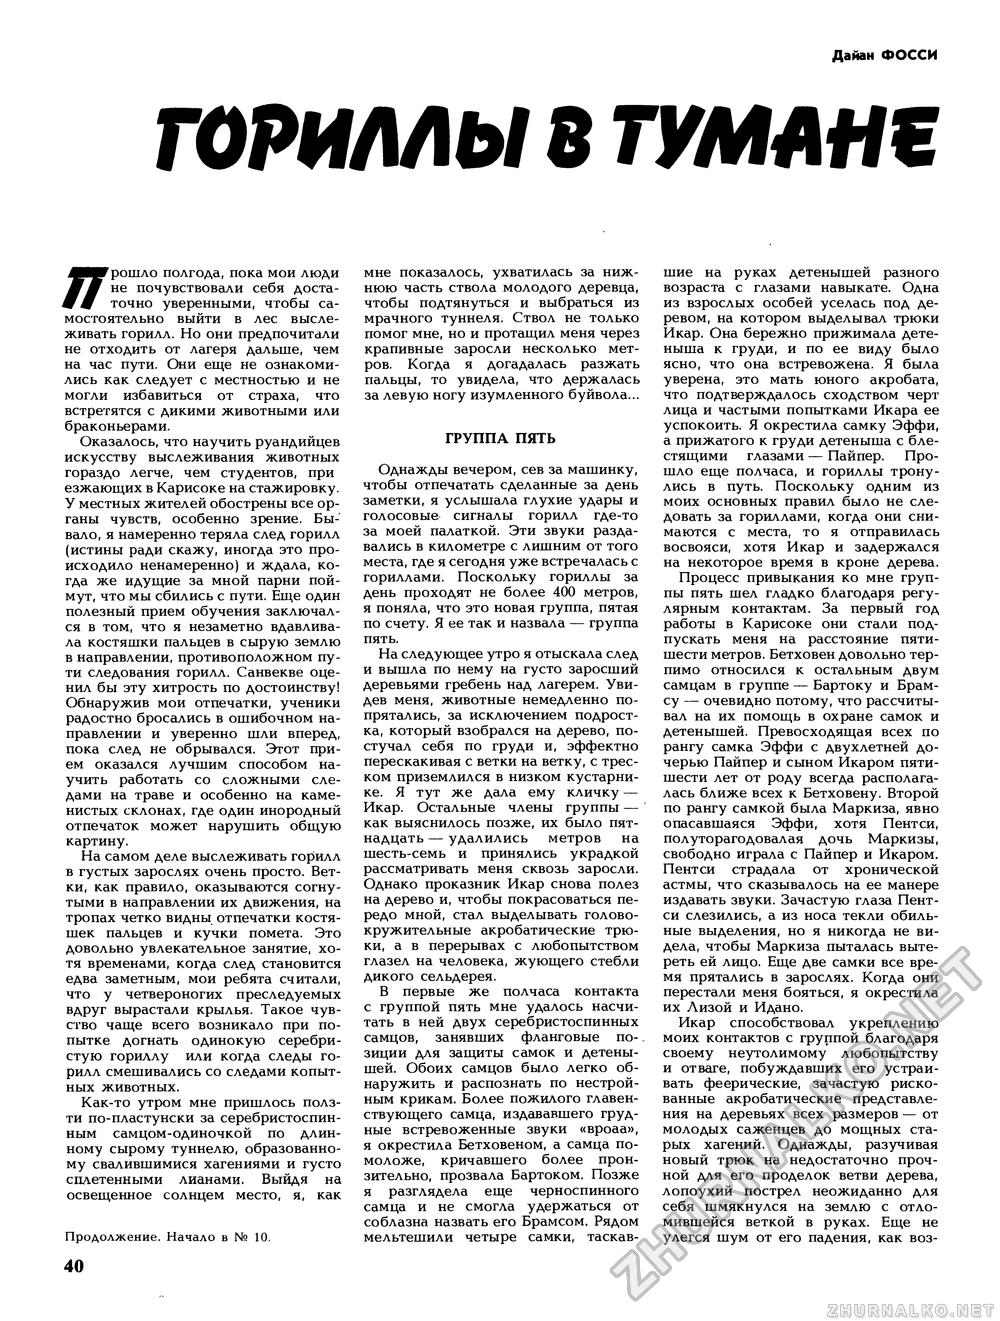 Вокруг света 1989-11, страница 42